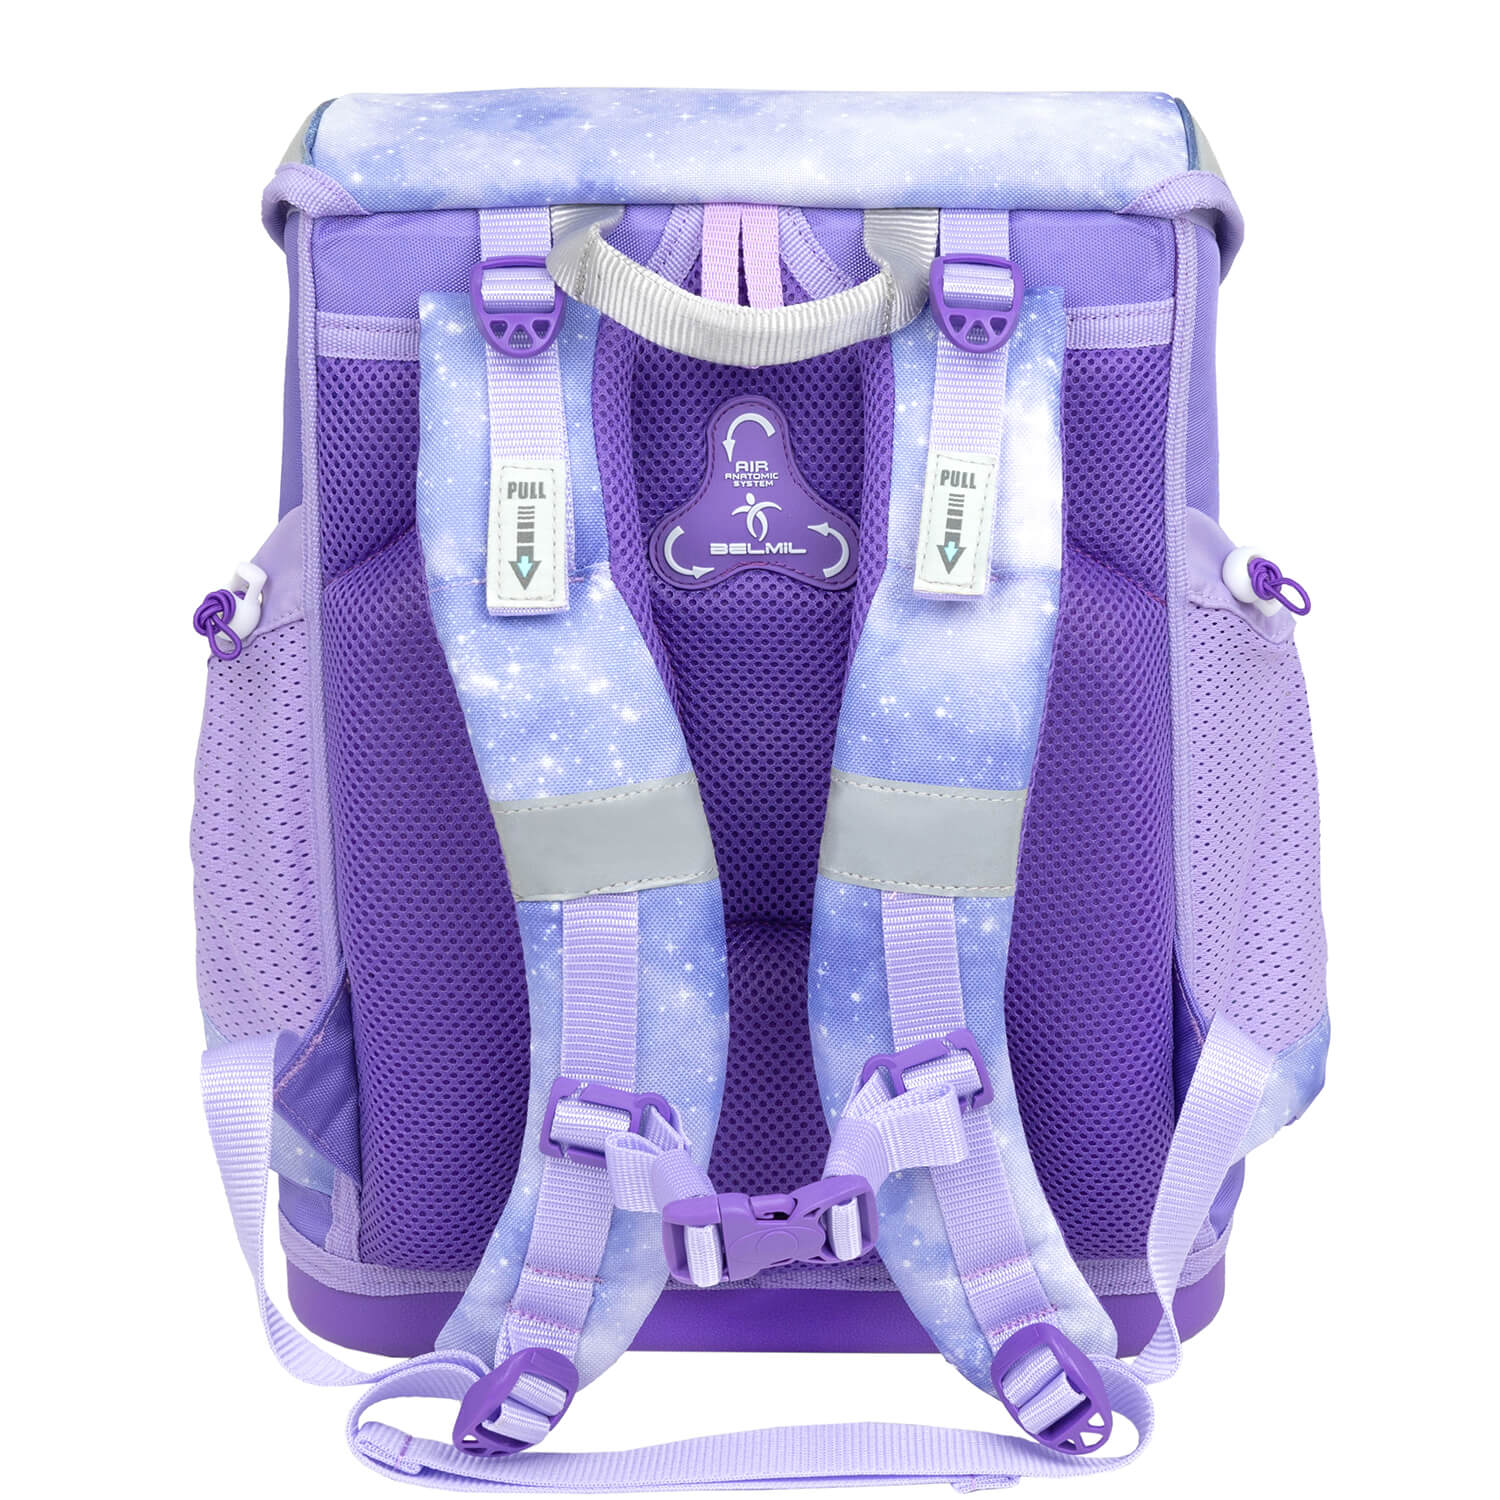 Mini-Fit Mistyc Luna schoolbag set 4 pcs